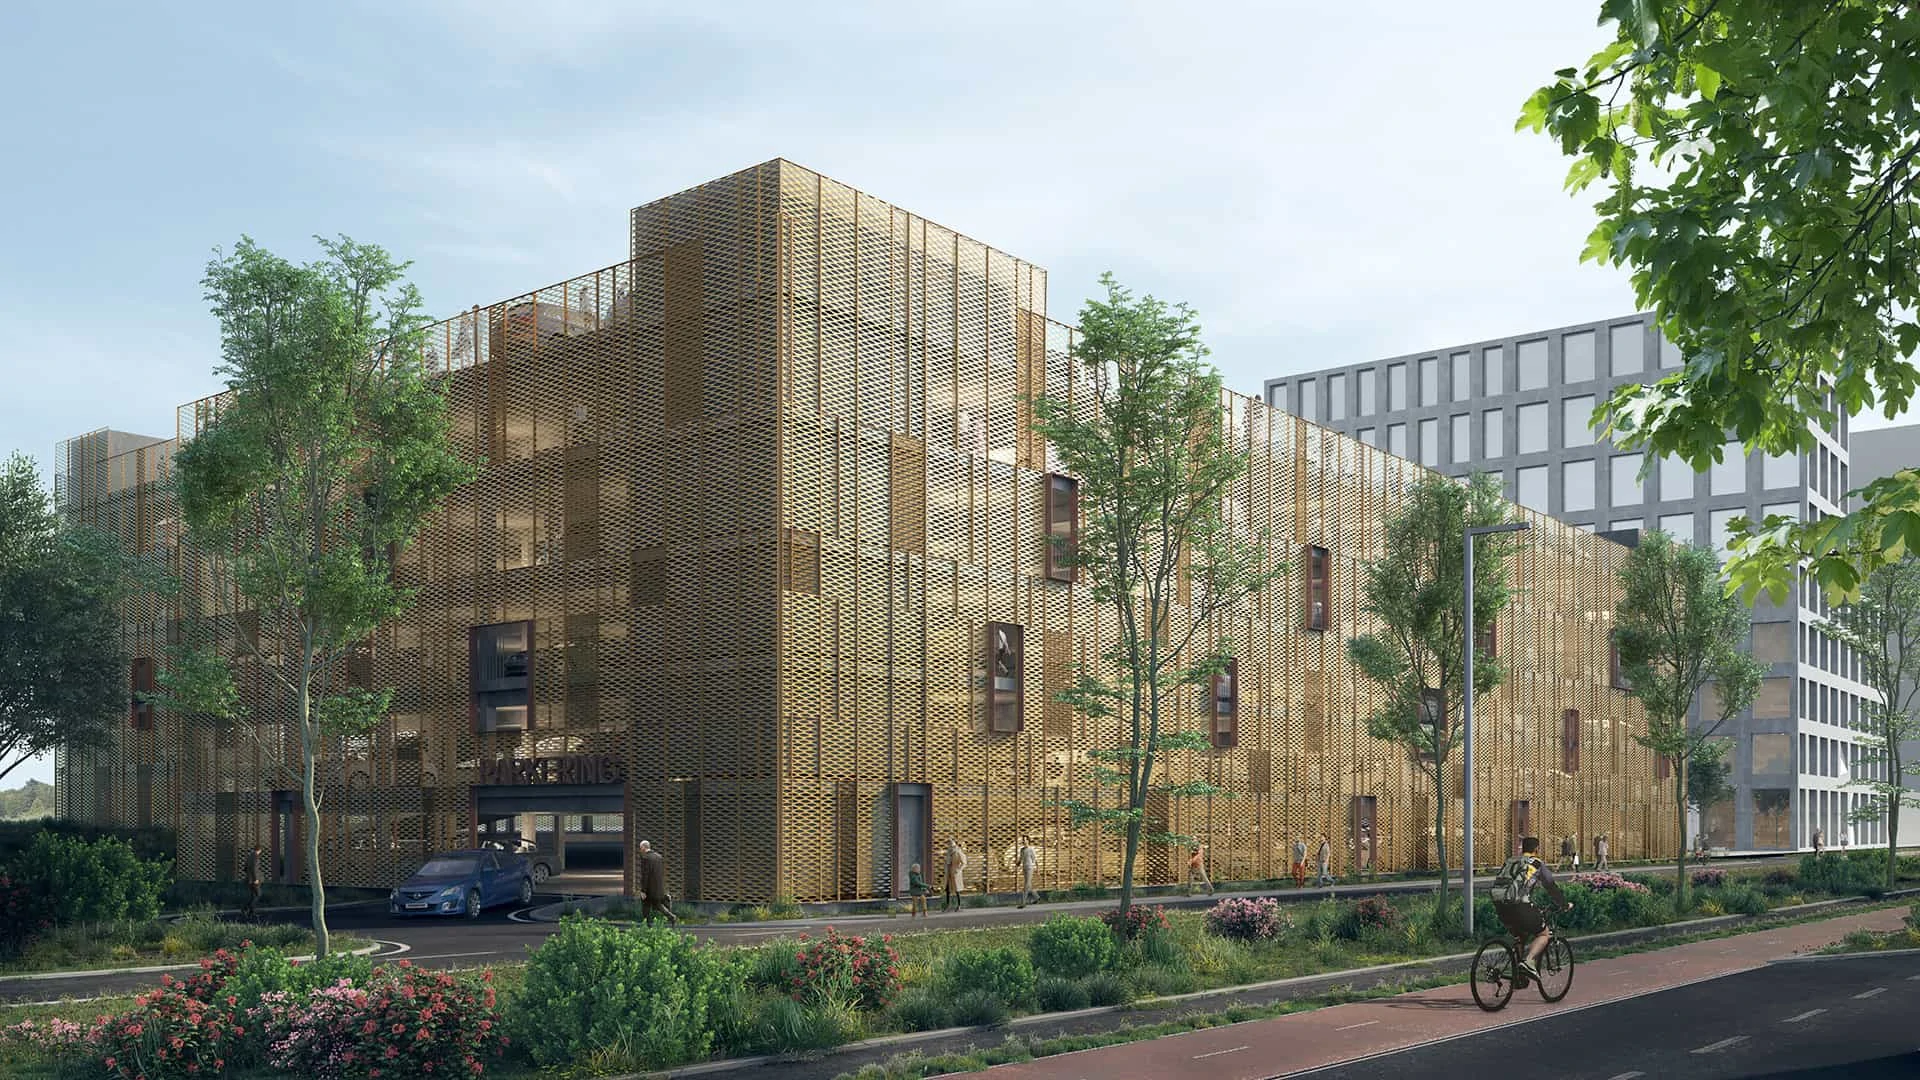 NCC afleverer parkeringshus opført efter eget koncept i ny bydel